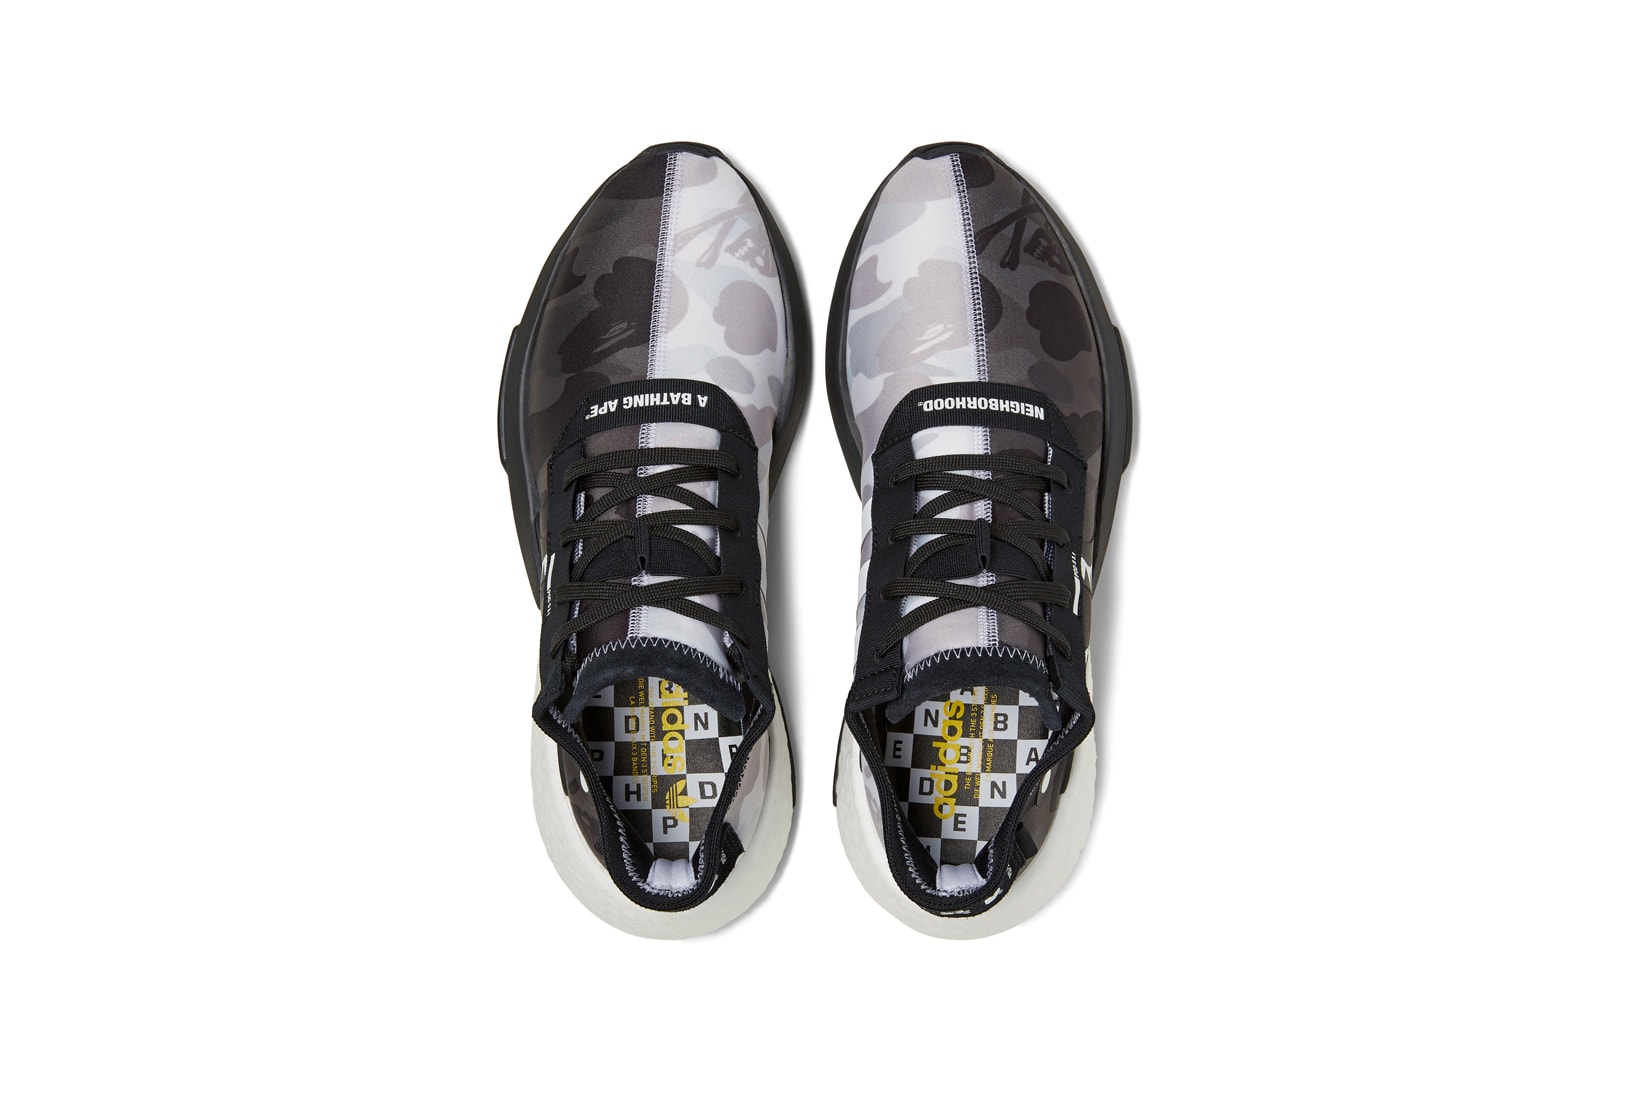 BAPE x Neighborhood x adidas Originals POD S 3.1 Grey Black White